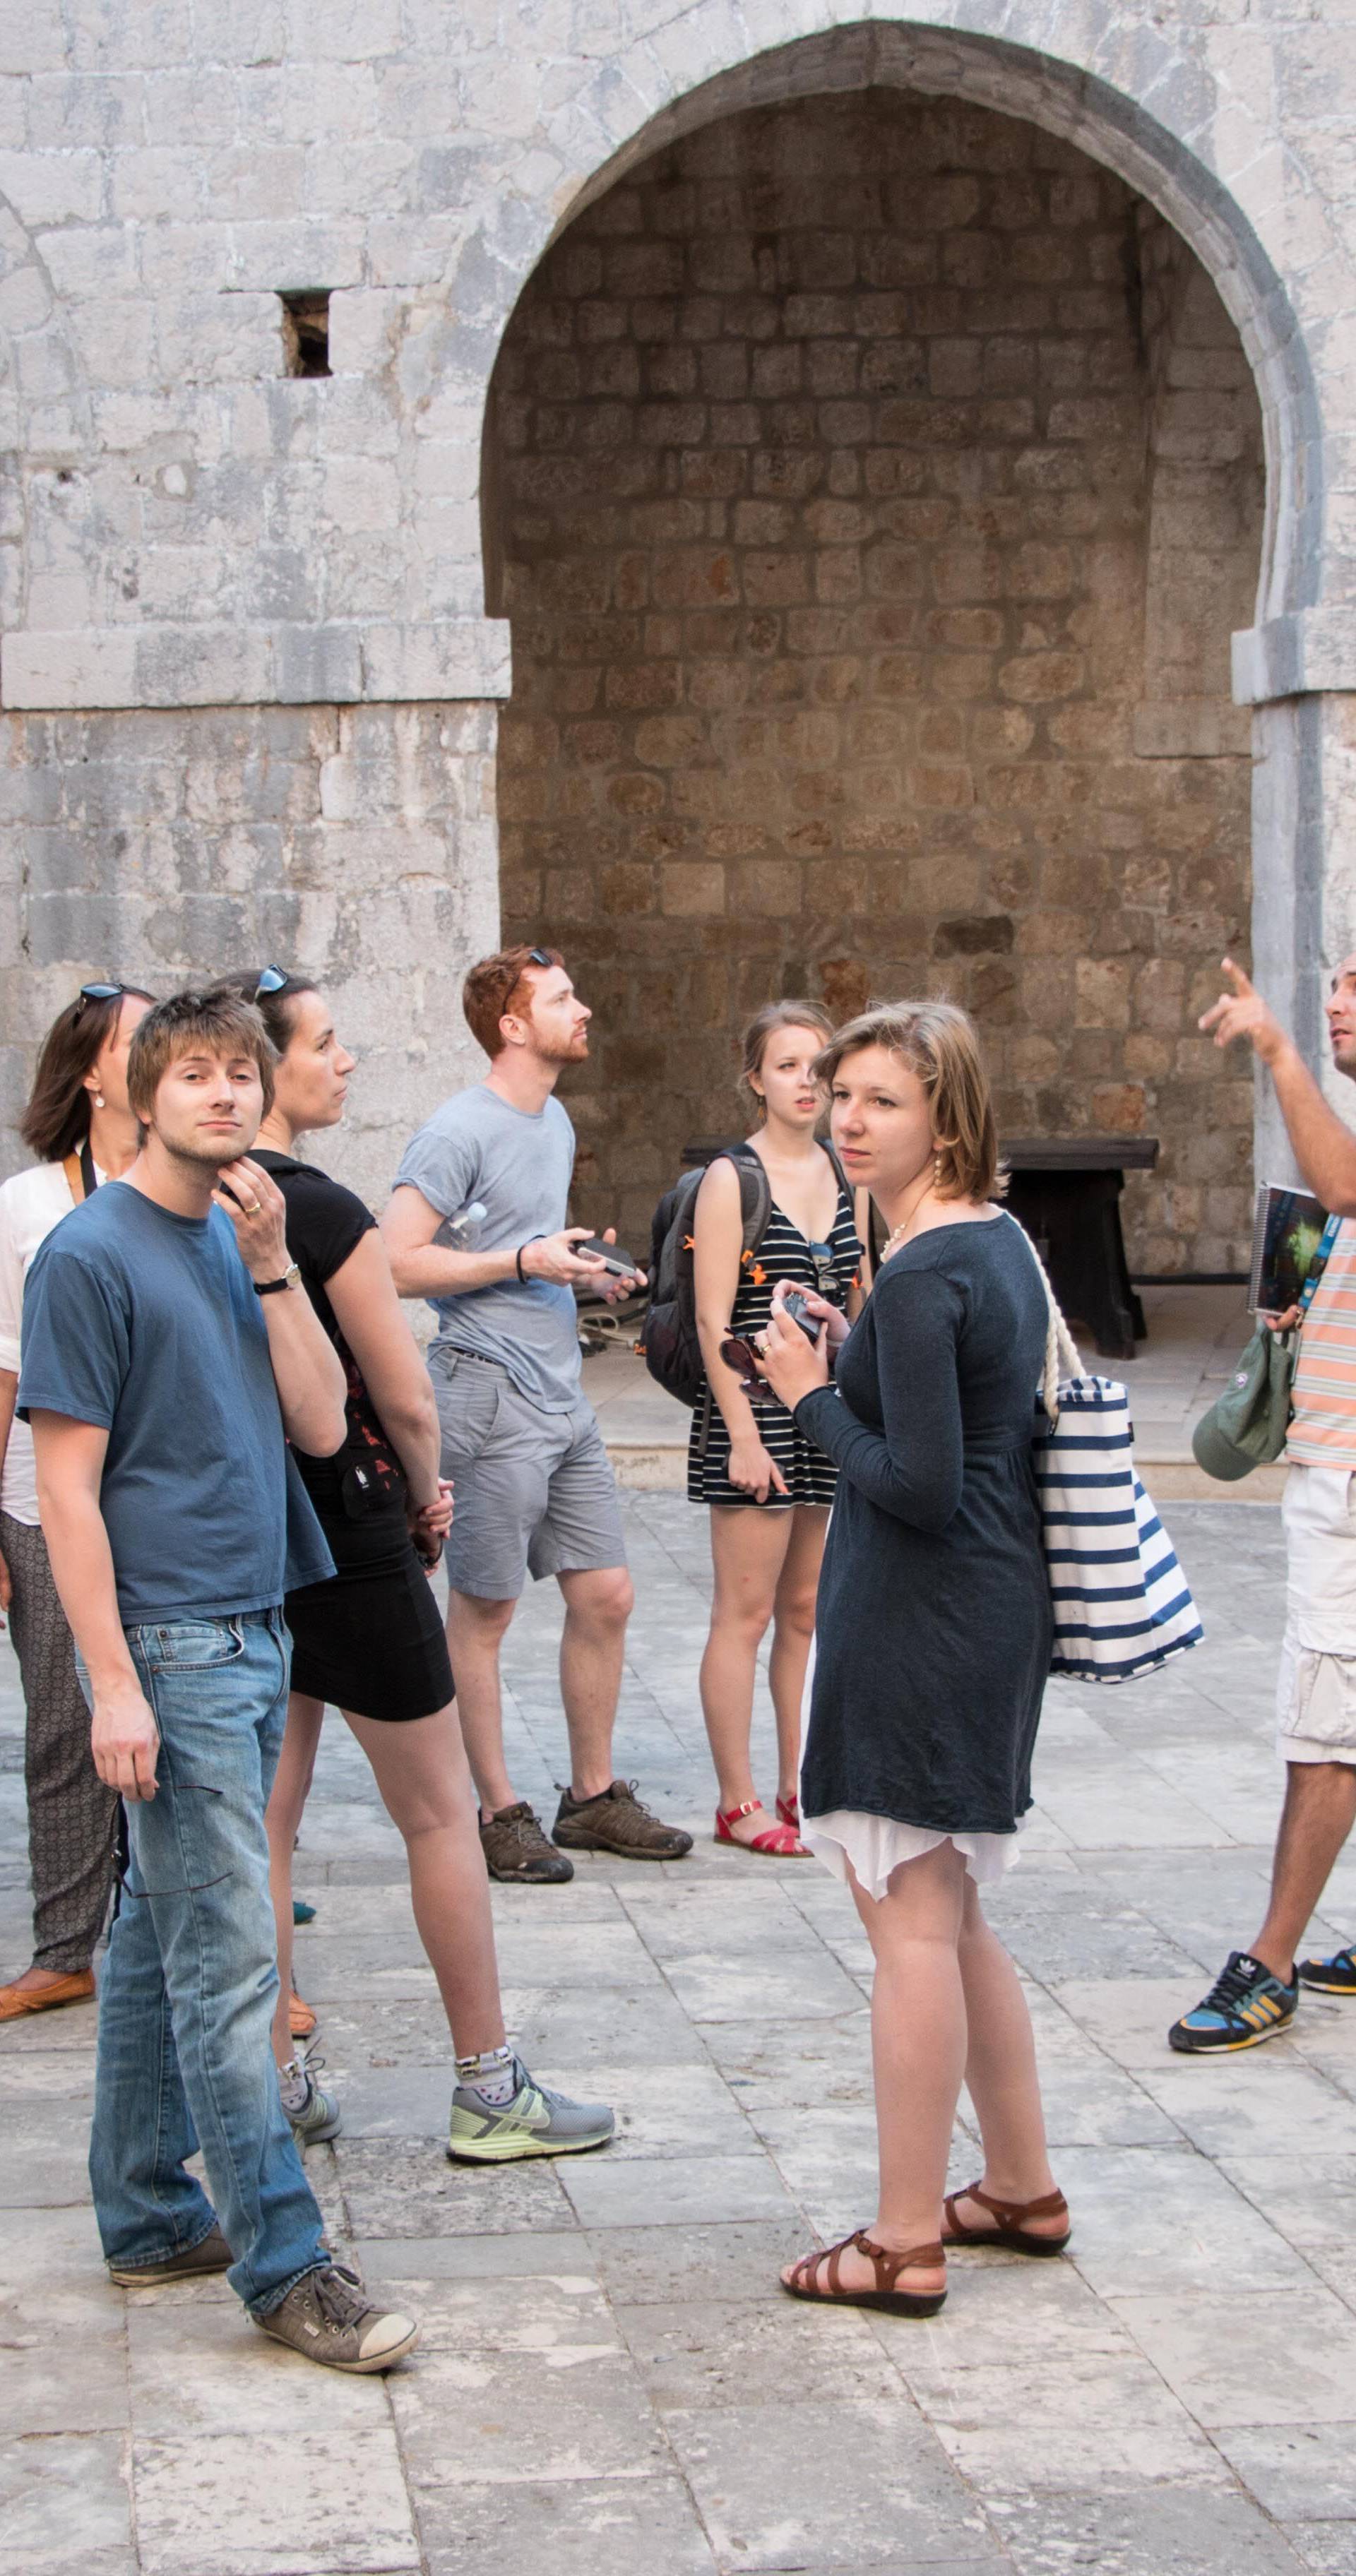 'Stranci misle da je Dubrovnik sagrađen zbog Igre prijestolja'